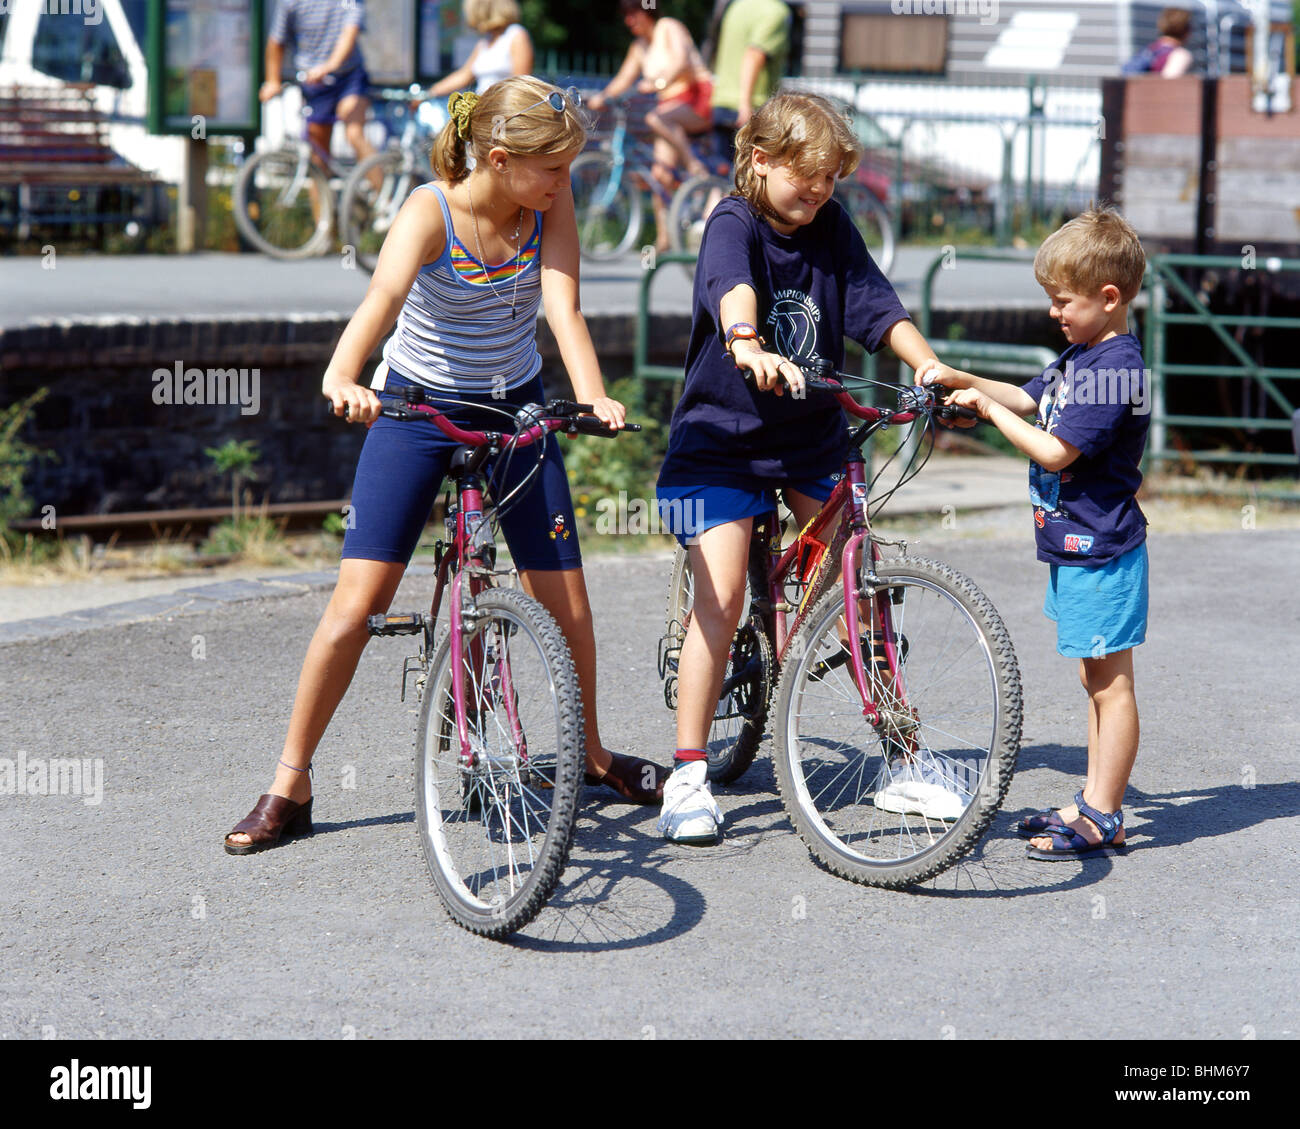 Les enfants sur les bicyclettes, Westward Ho !, Devon, Angleterre, Royaume-Uni Banque D'Images